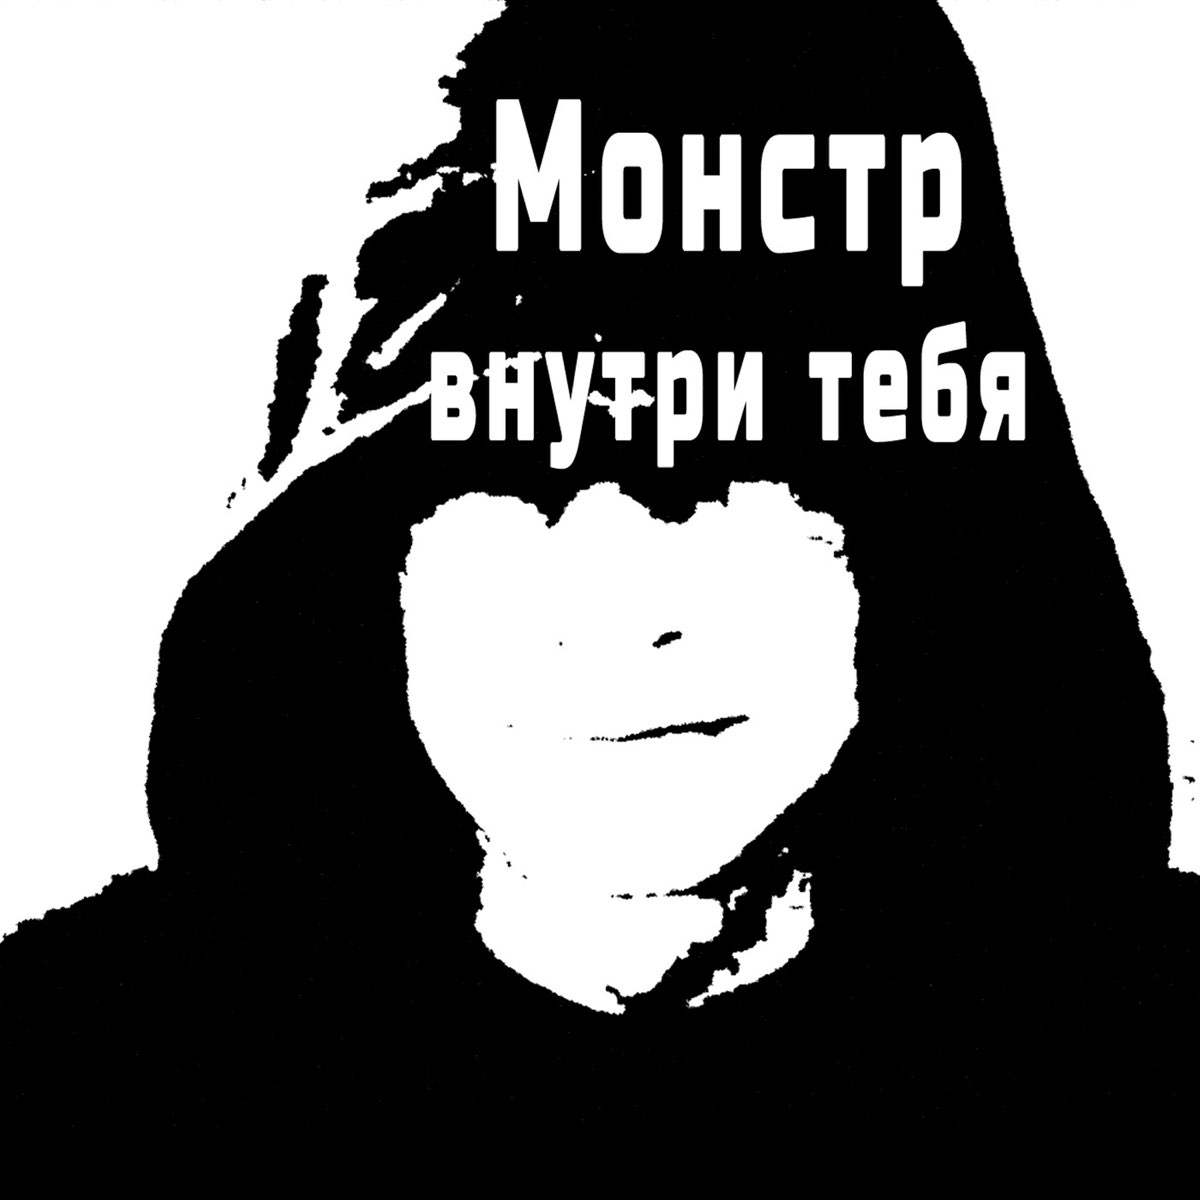 Монстр внутри тебя - Single - Album by Gek Kosni - Apple Music